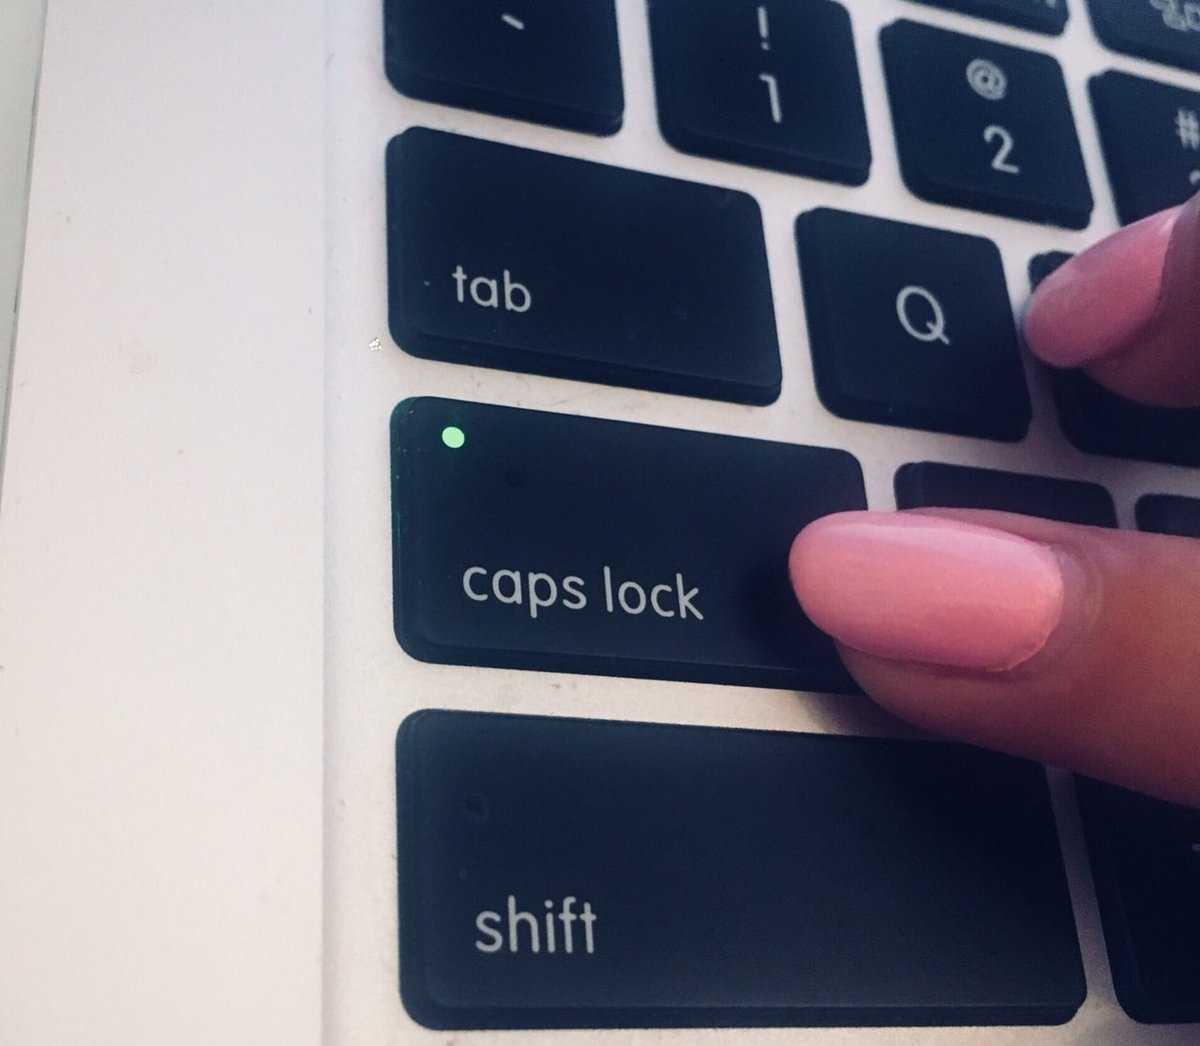 Включение и отключение caps lock с помощью shift